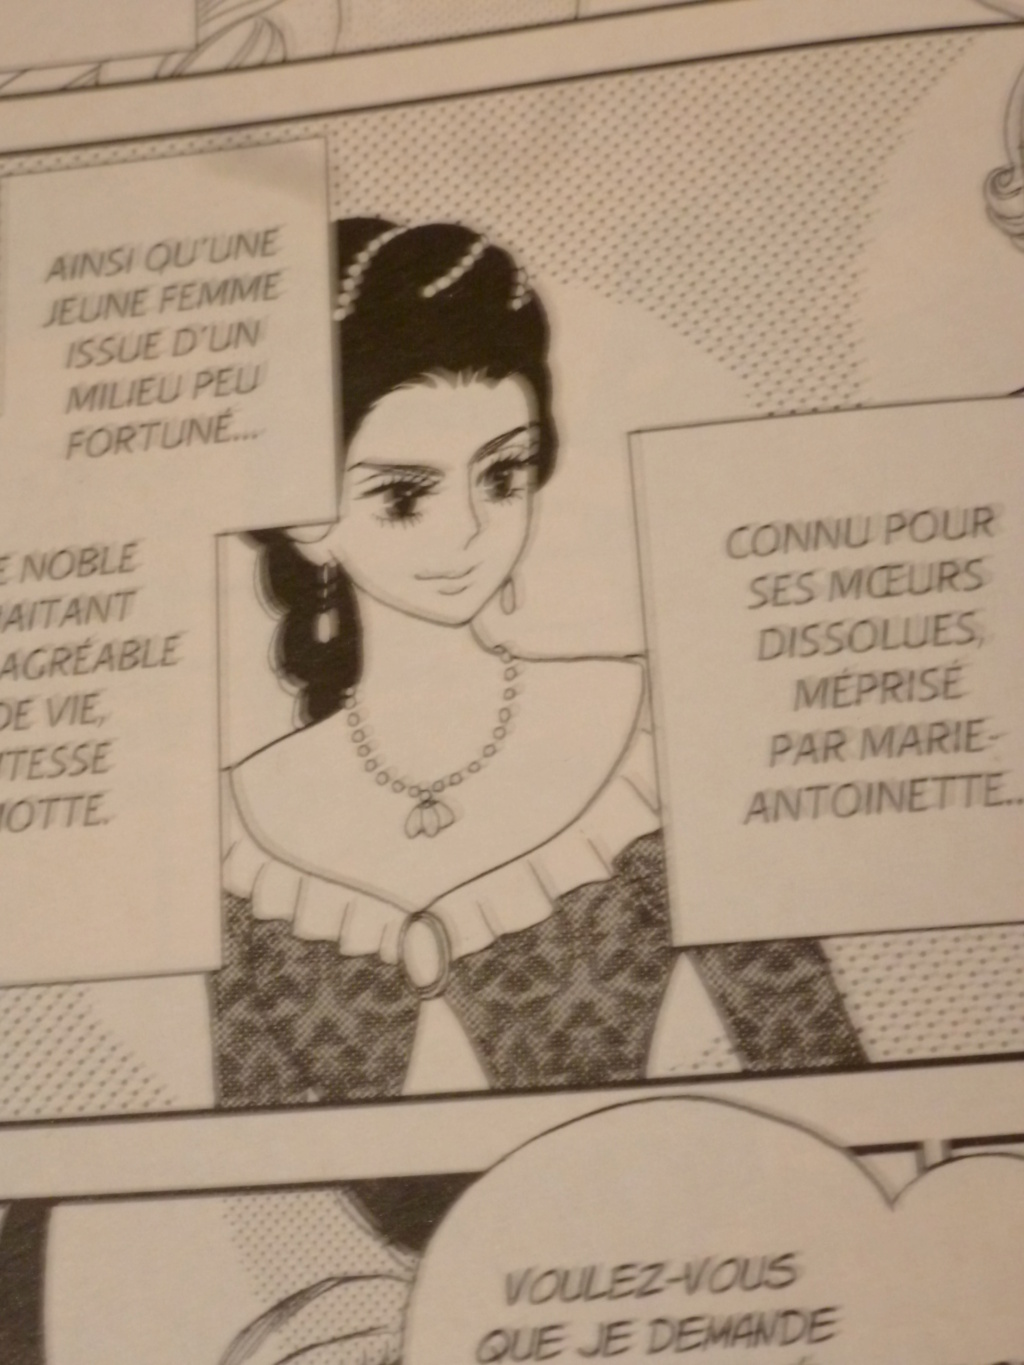 Référence à Jeanne de la Motte version Ikeda dans le manga Marie-Antoinette? P1080611